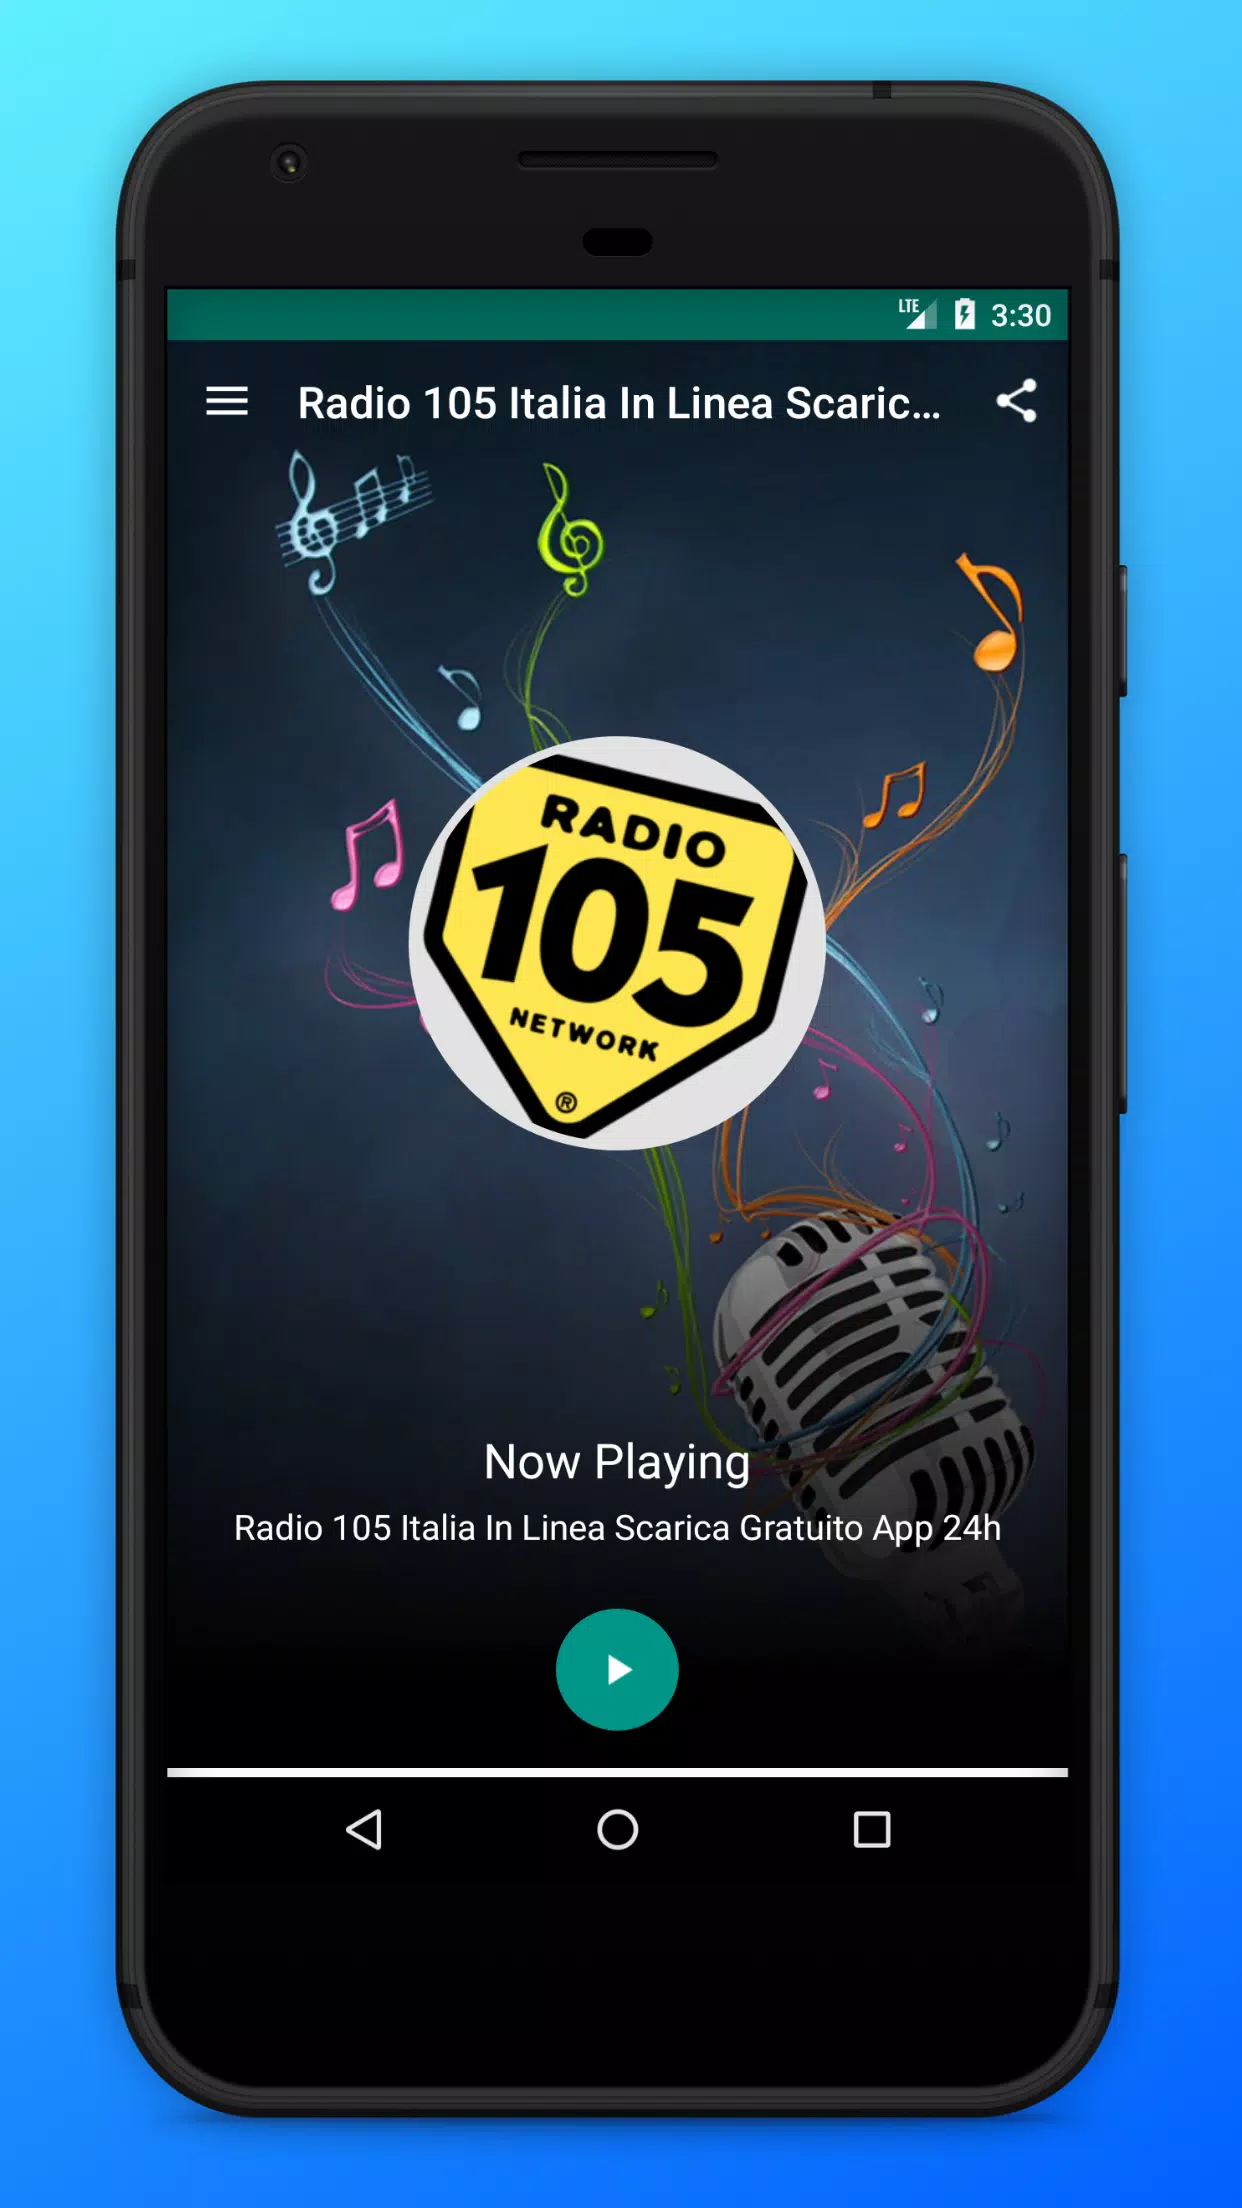 下载Radio 105 Italia In Linea Scarica Gratuito App 24h的安卓版本